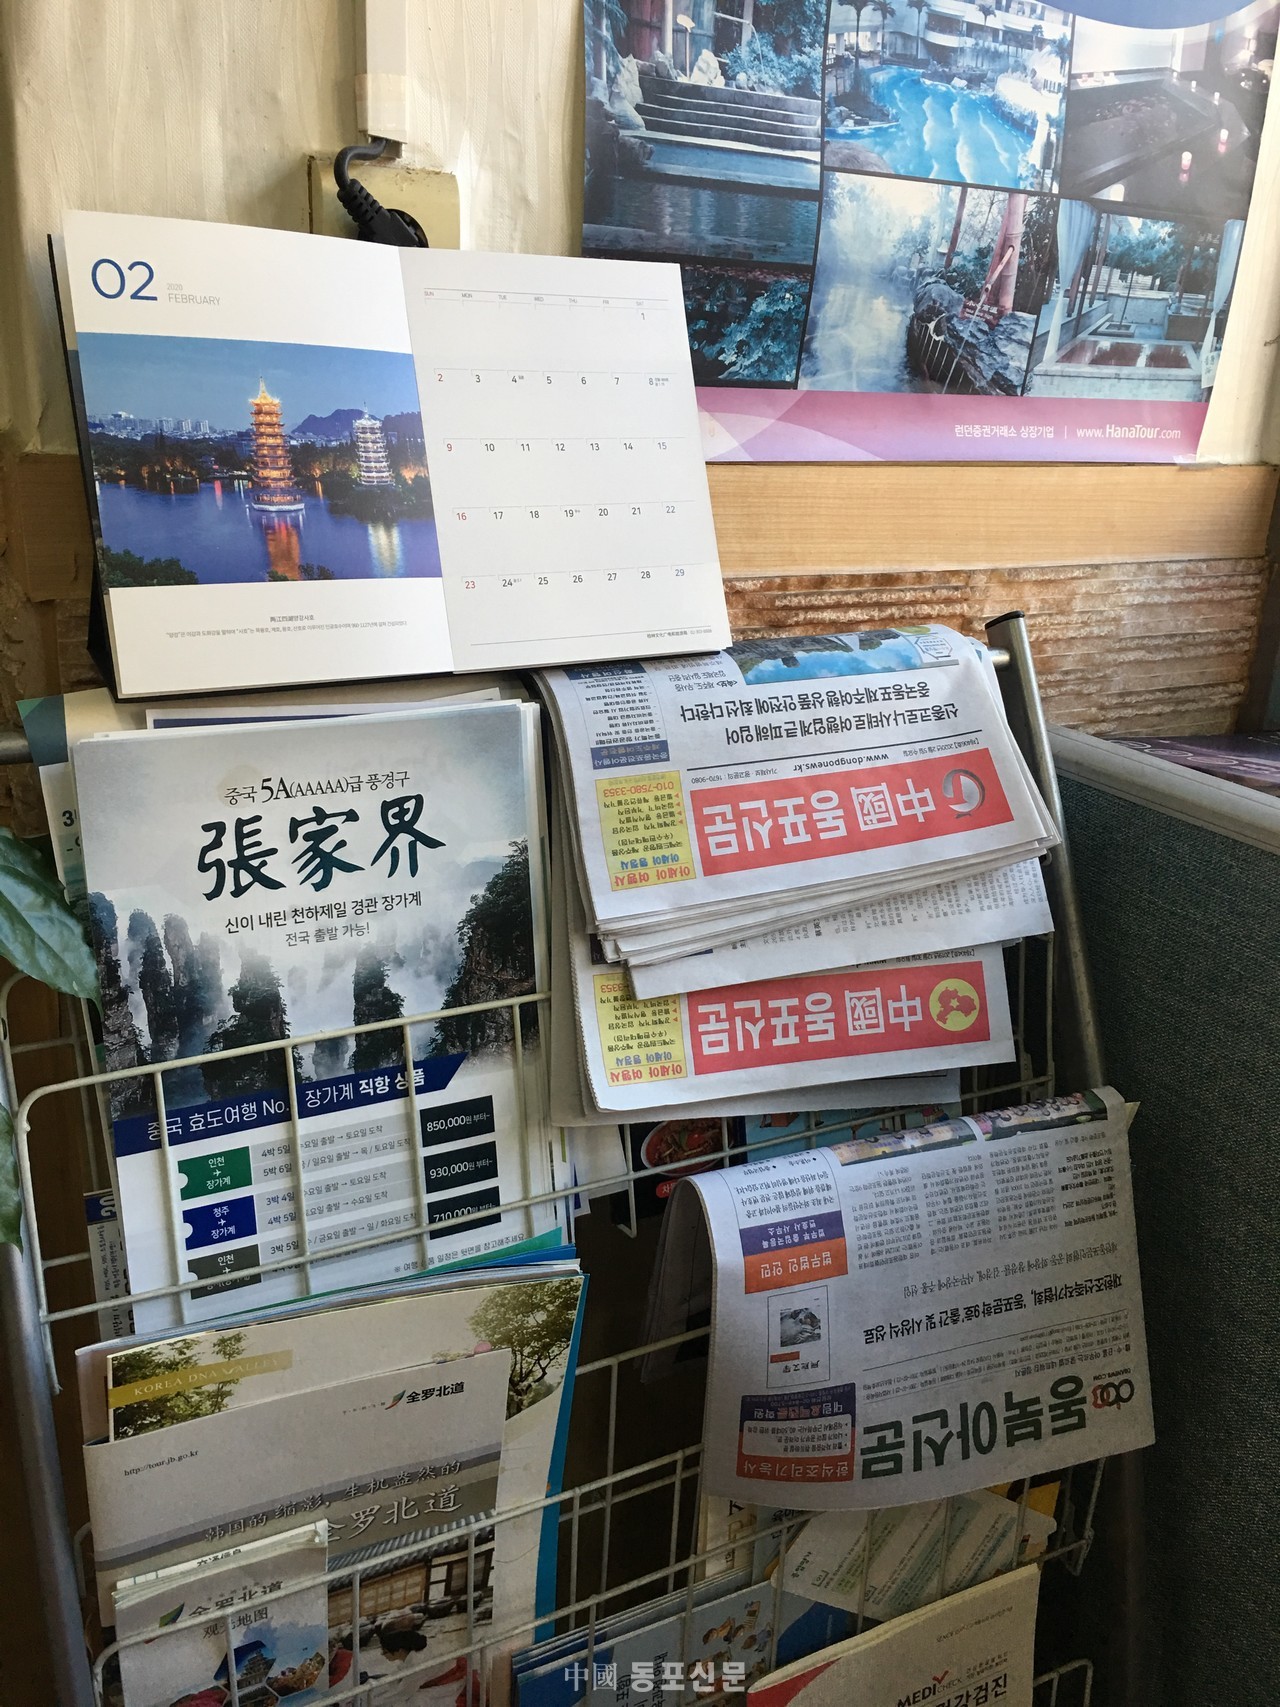 대림과 구로사이 큰 도로변 여행사에  배포된 동포관련 신문사 배포대는 보이는 대로 신문이 비치되고 있다.